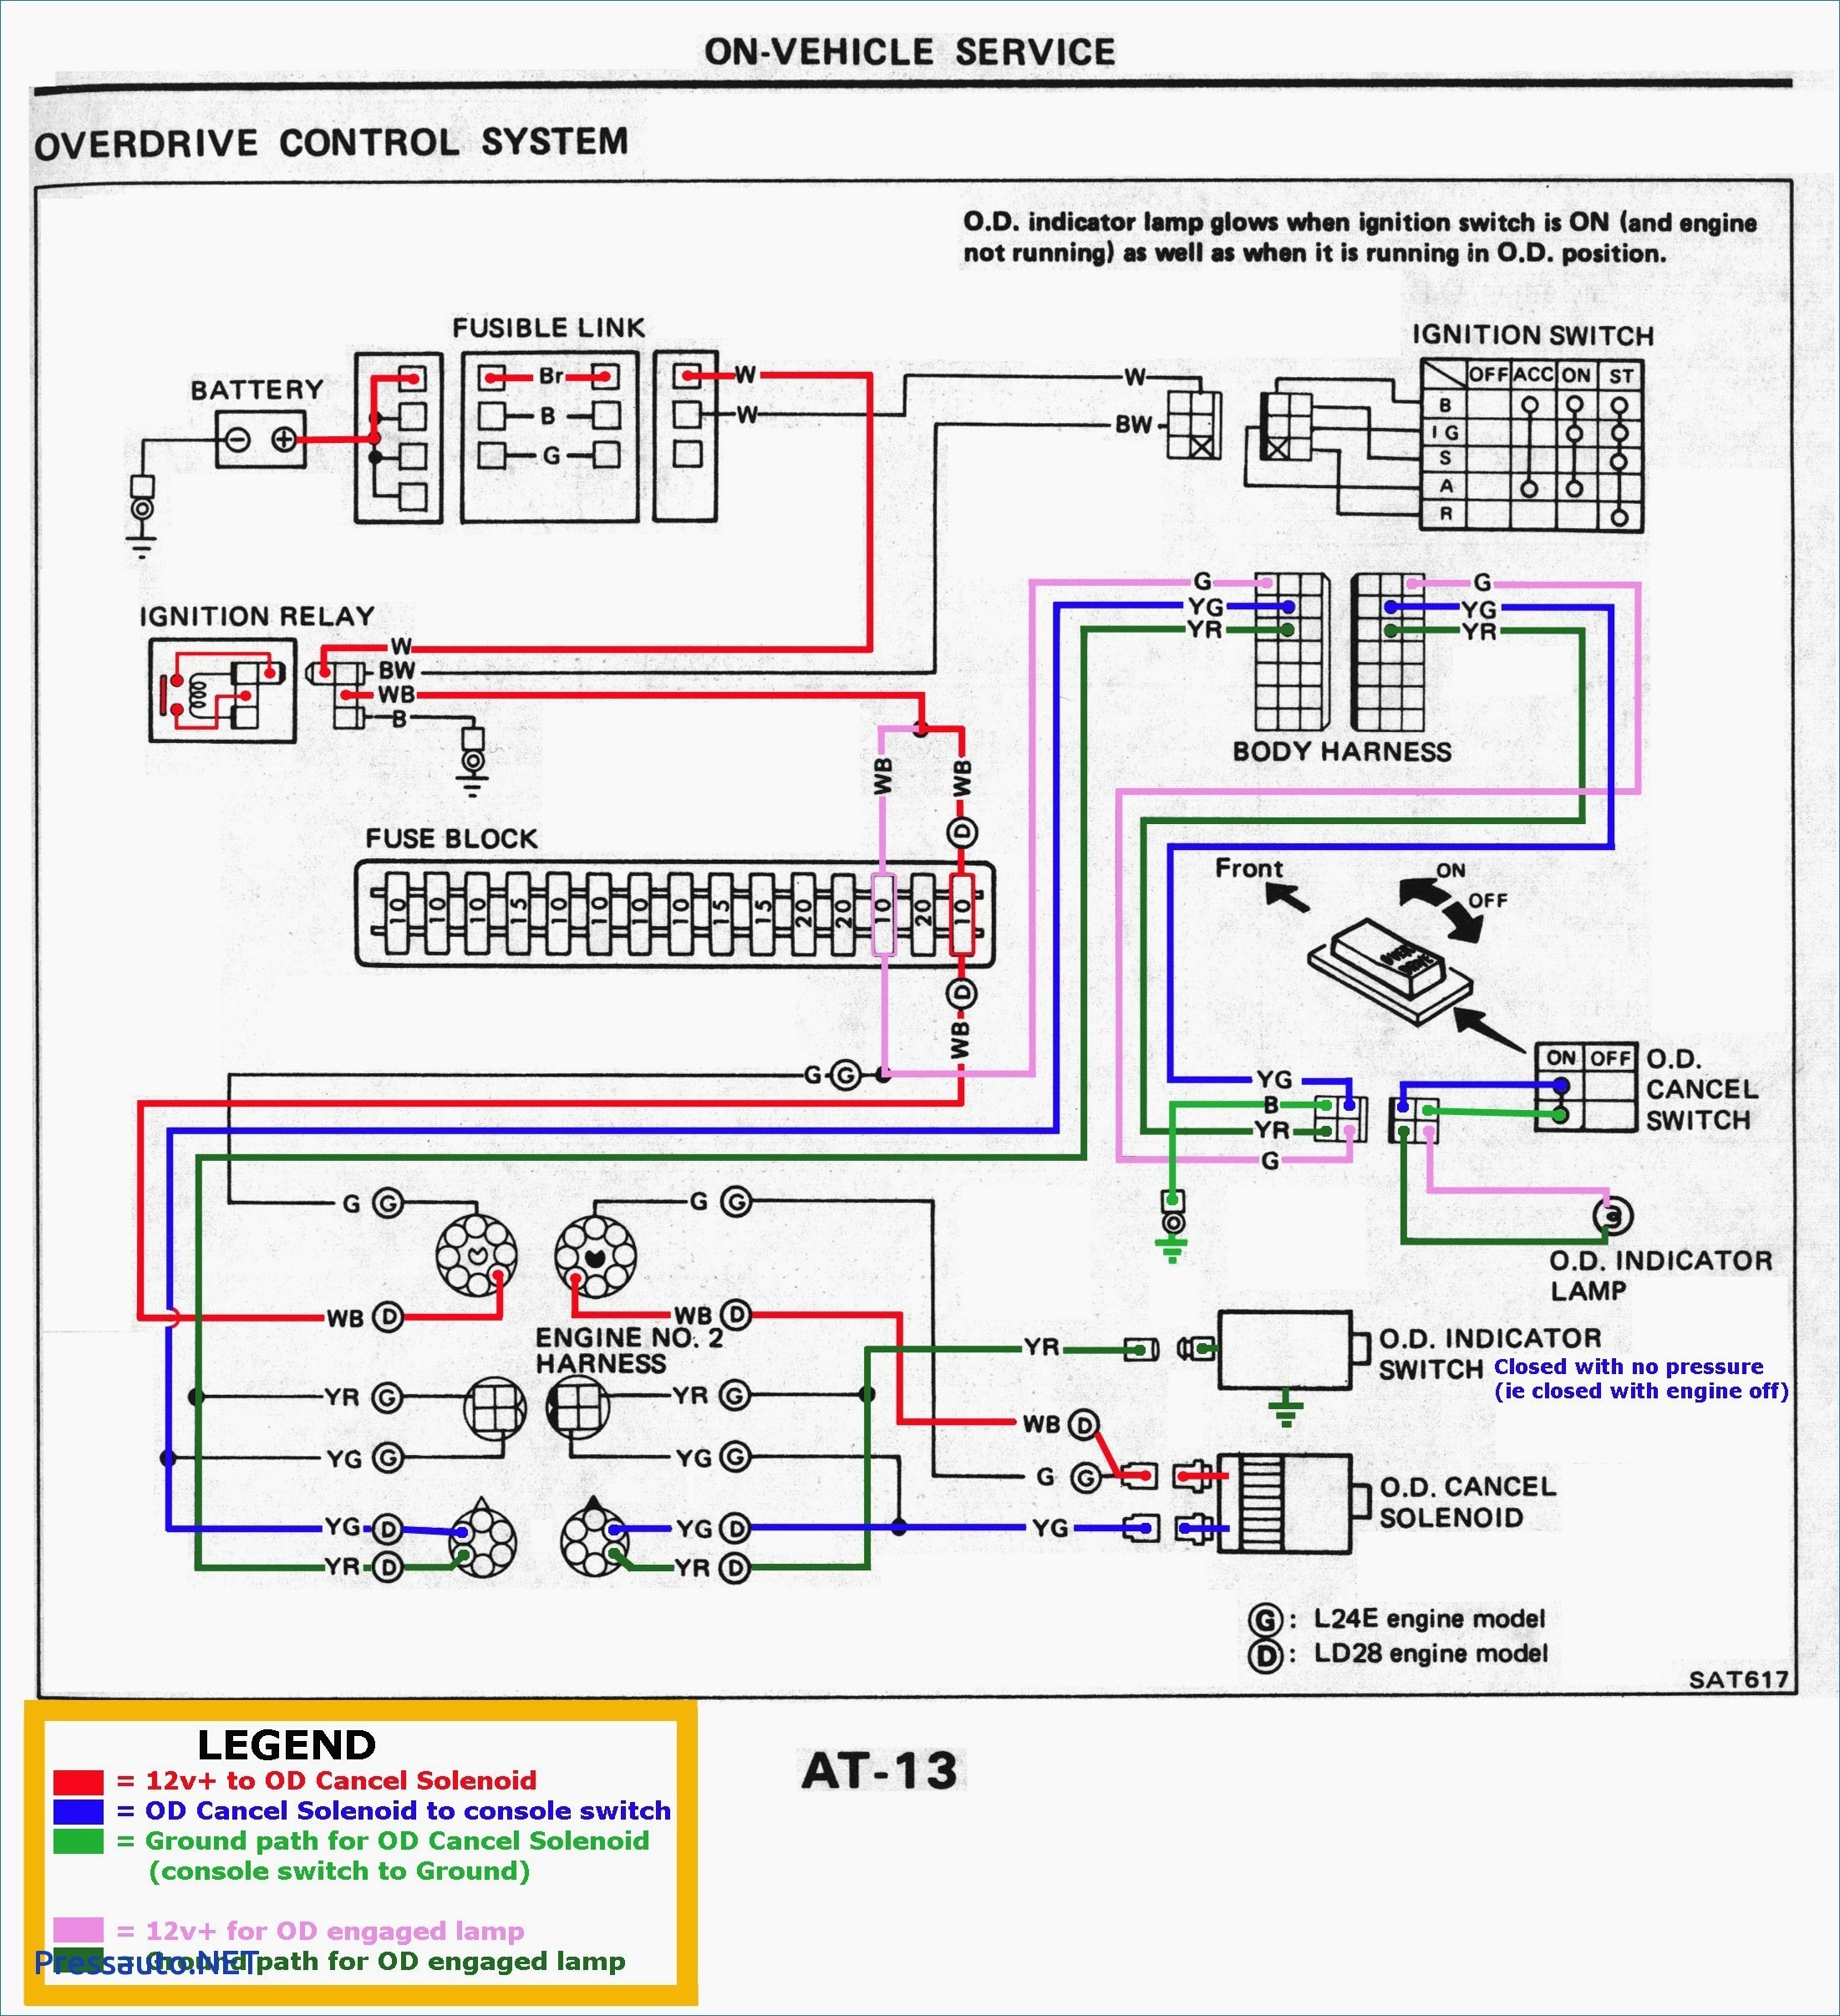 Electrical Wiring Nissan Wiring Diagram Get Image About Toyota Pickup John John Deere 720 Wiring Diagram